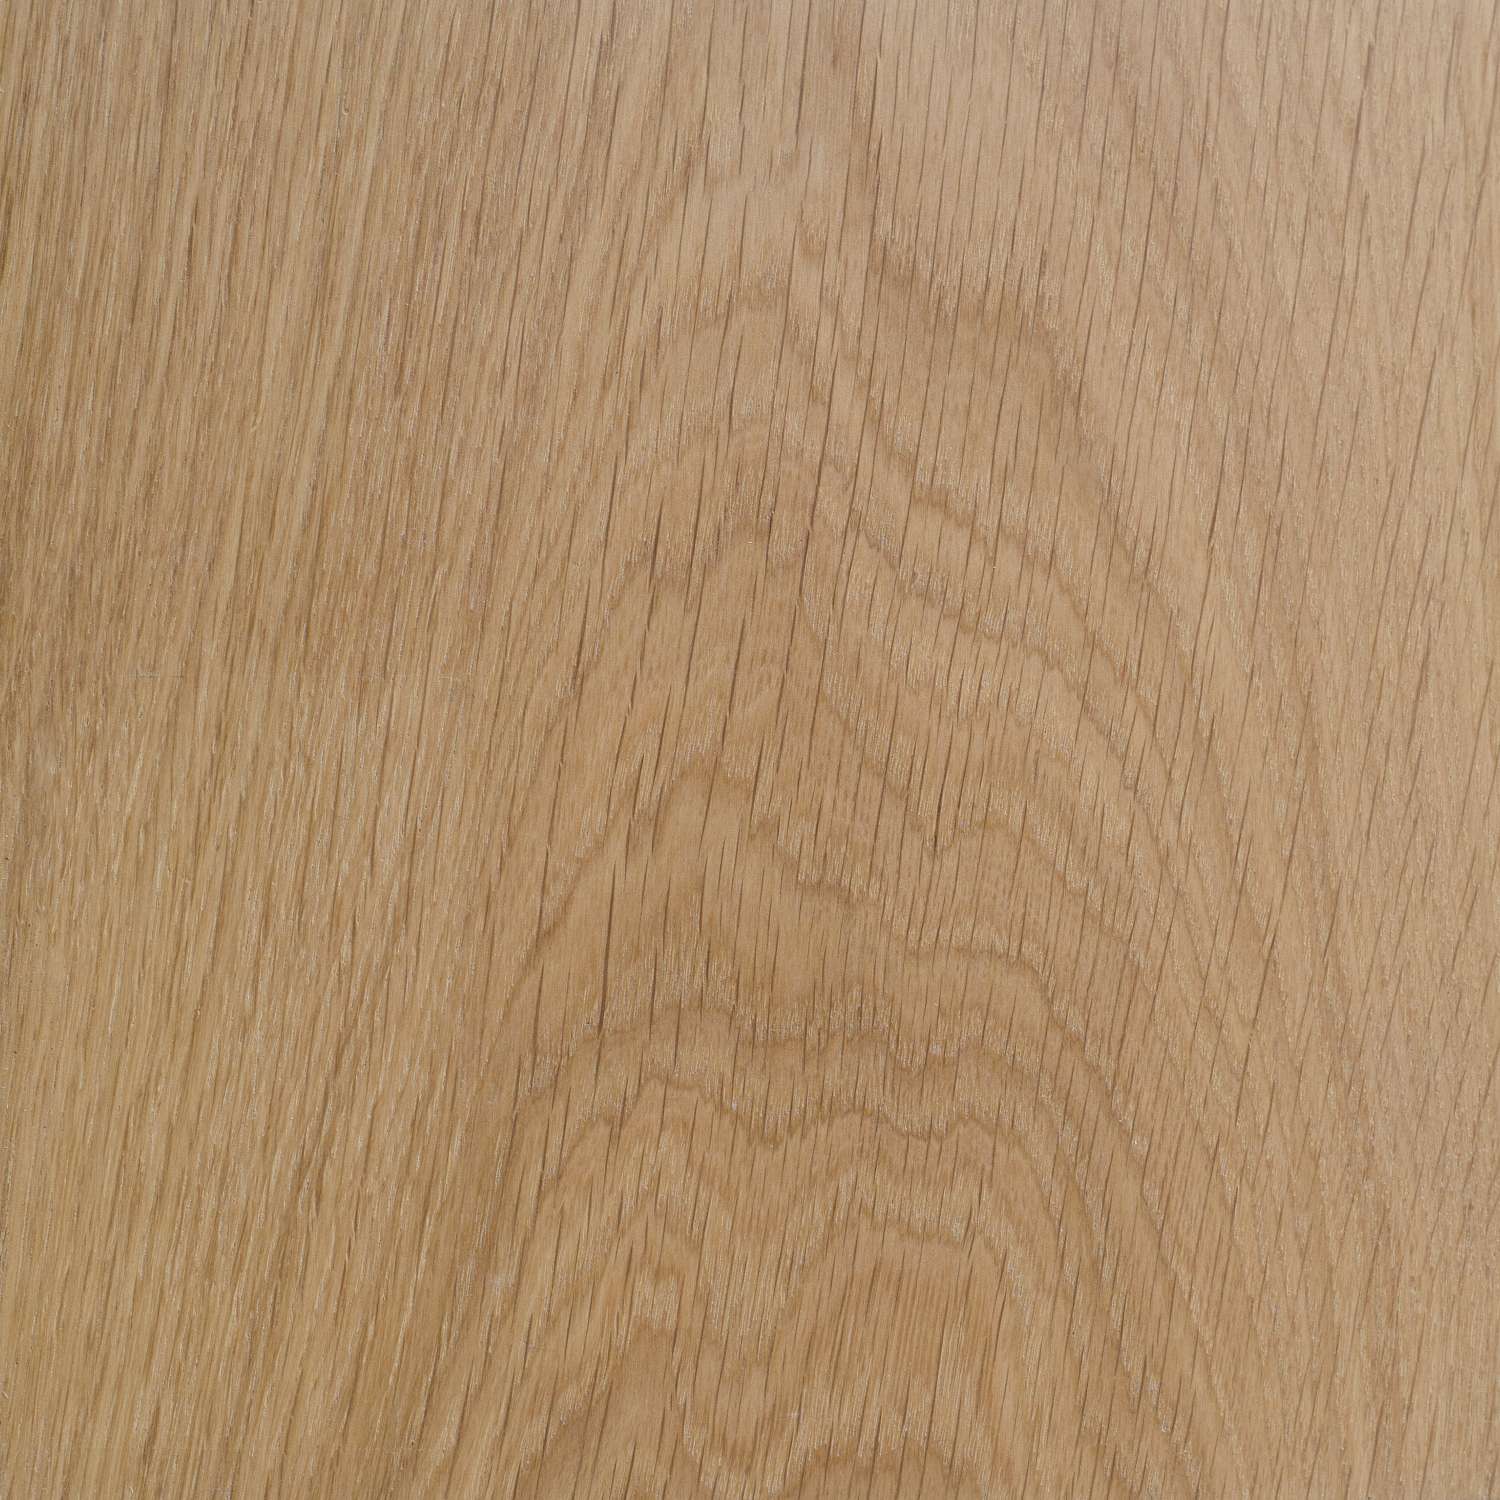 european white oak hardwood floor